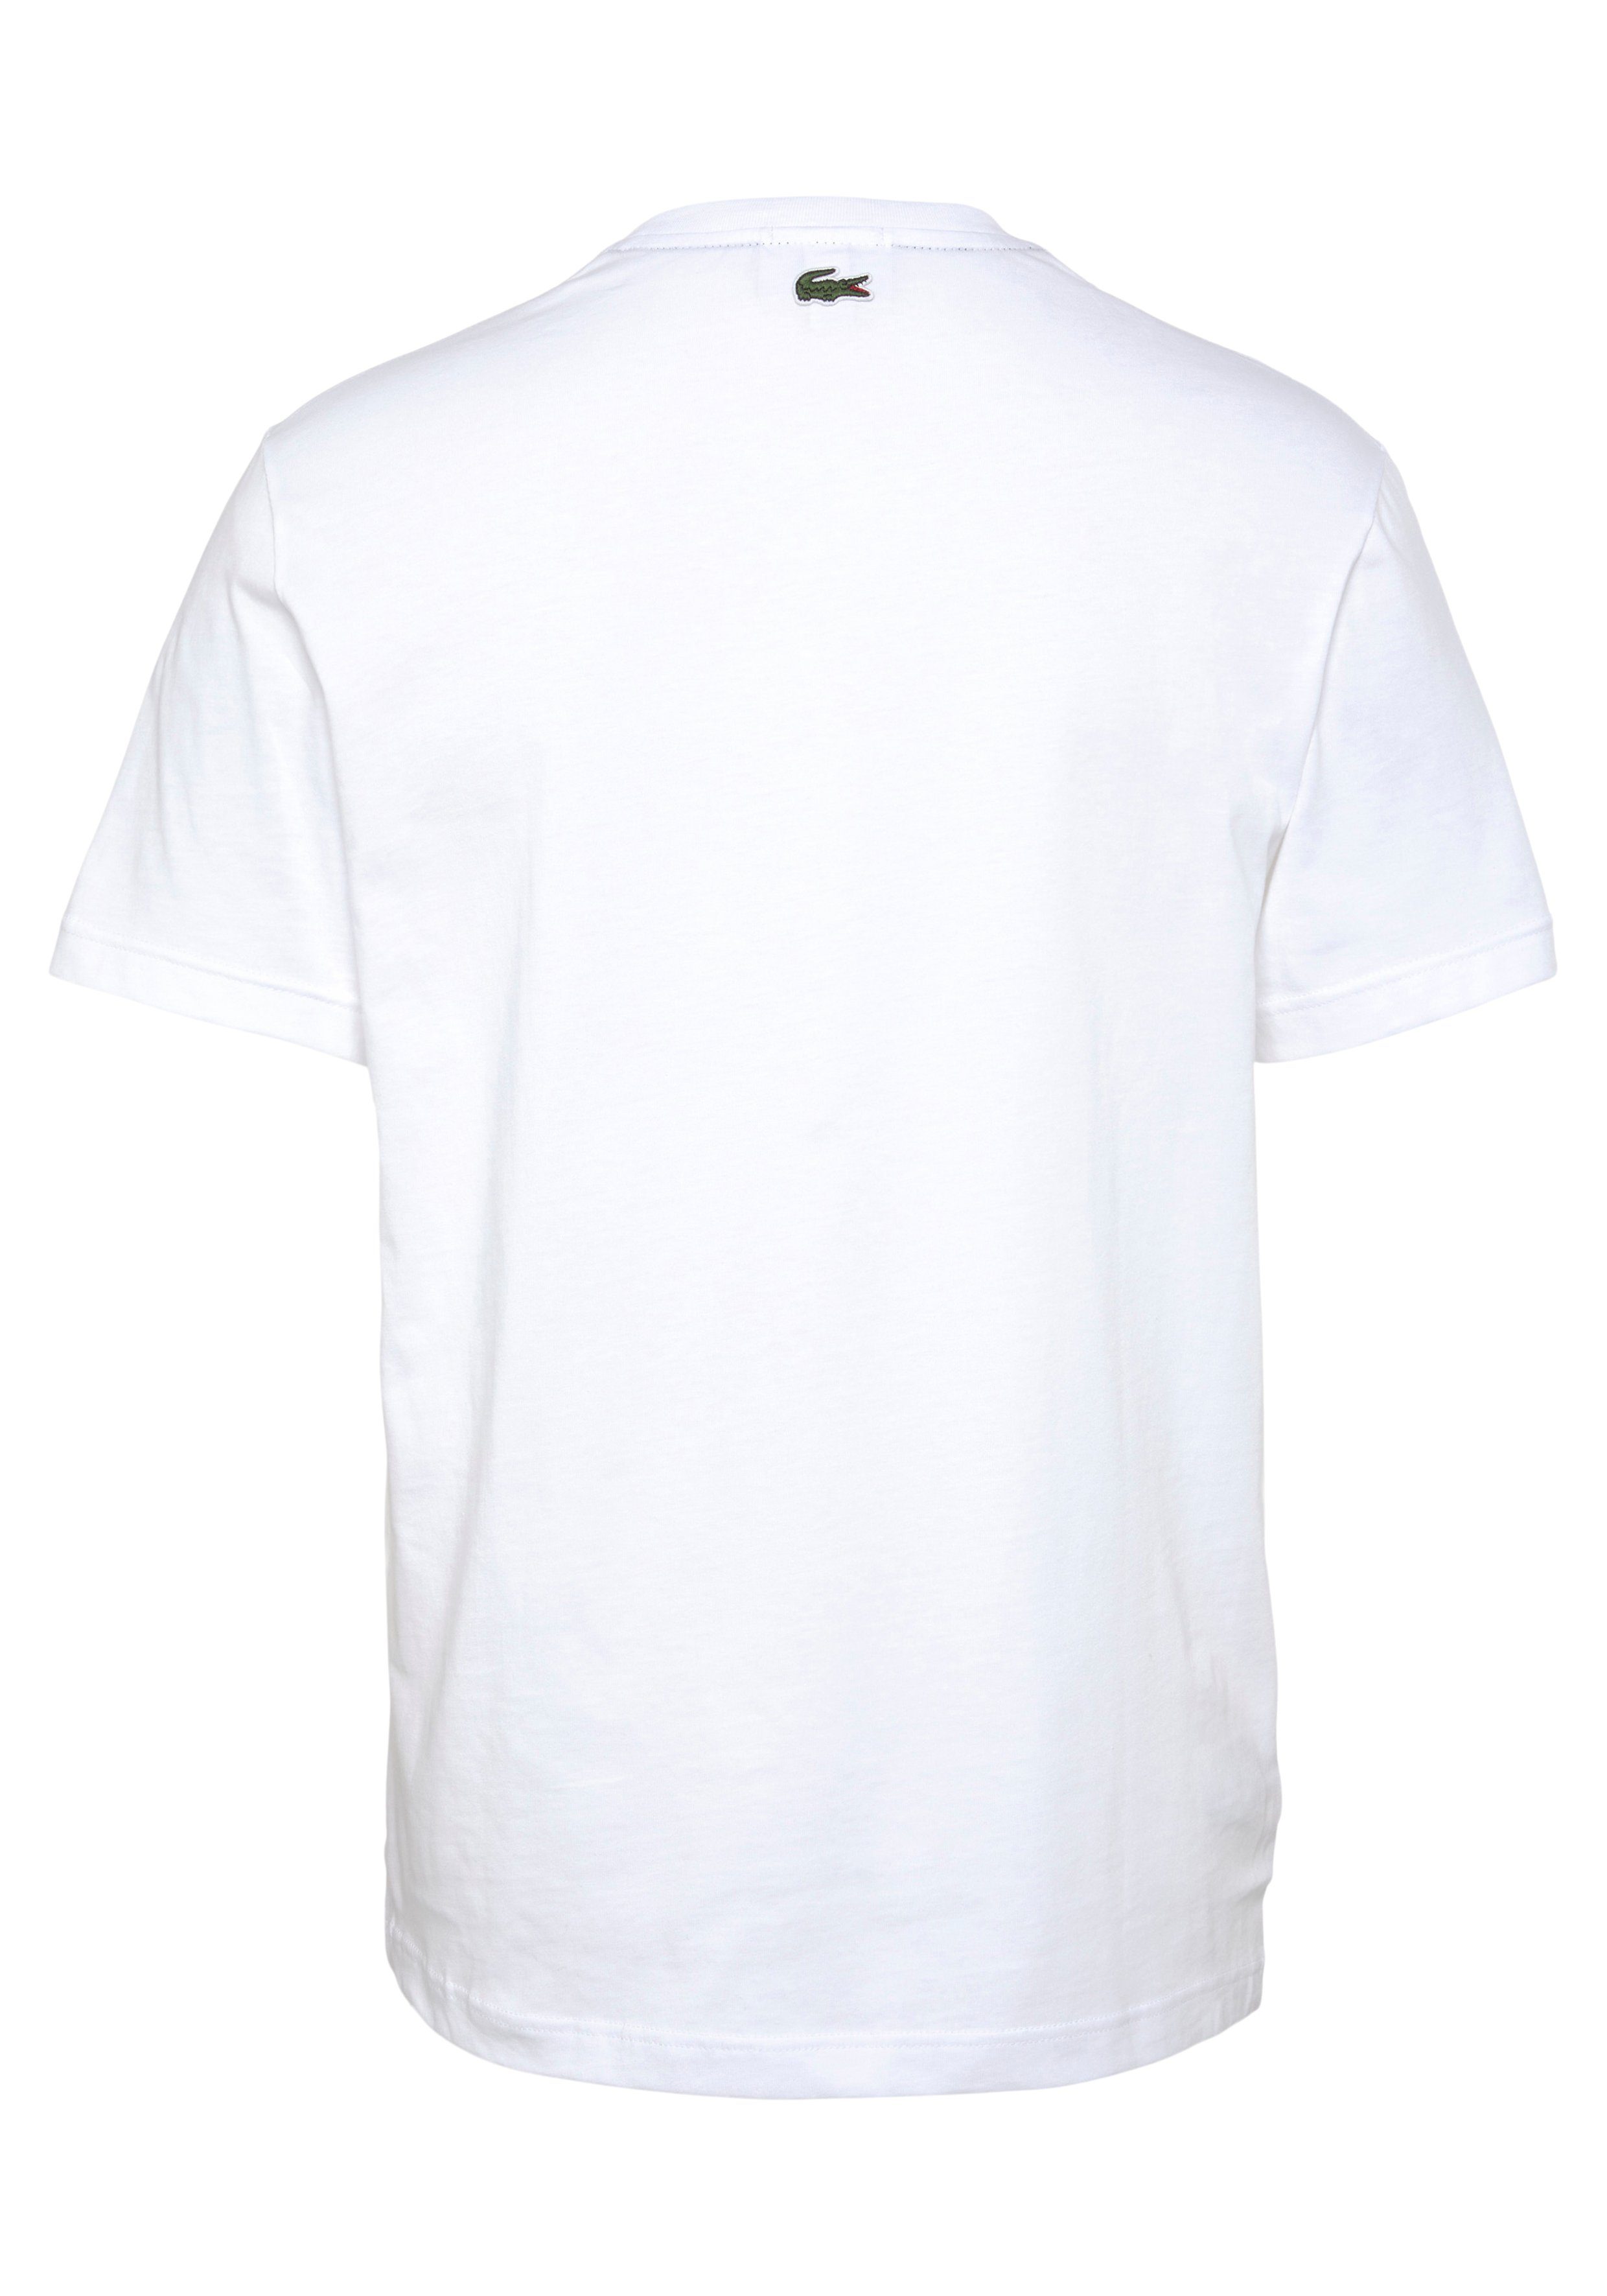 mit auf Print T-Shirt Brust Lacoste WHITE Lacoste T-SHIRT der